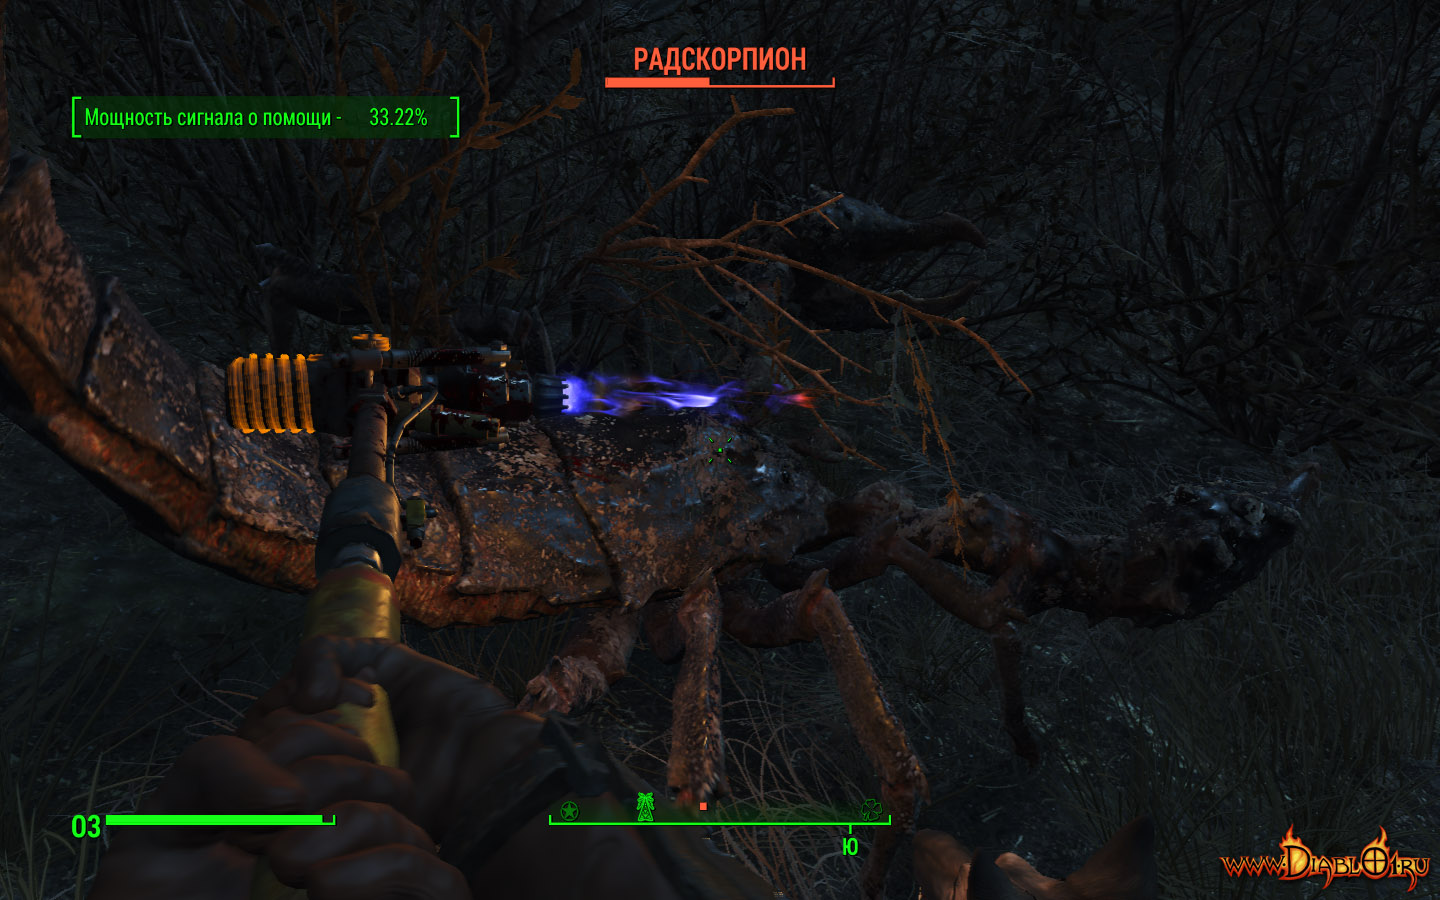 Fallout 4 мощность сигнала о помощи фото 27